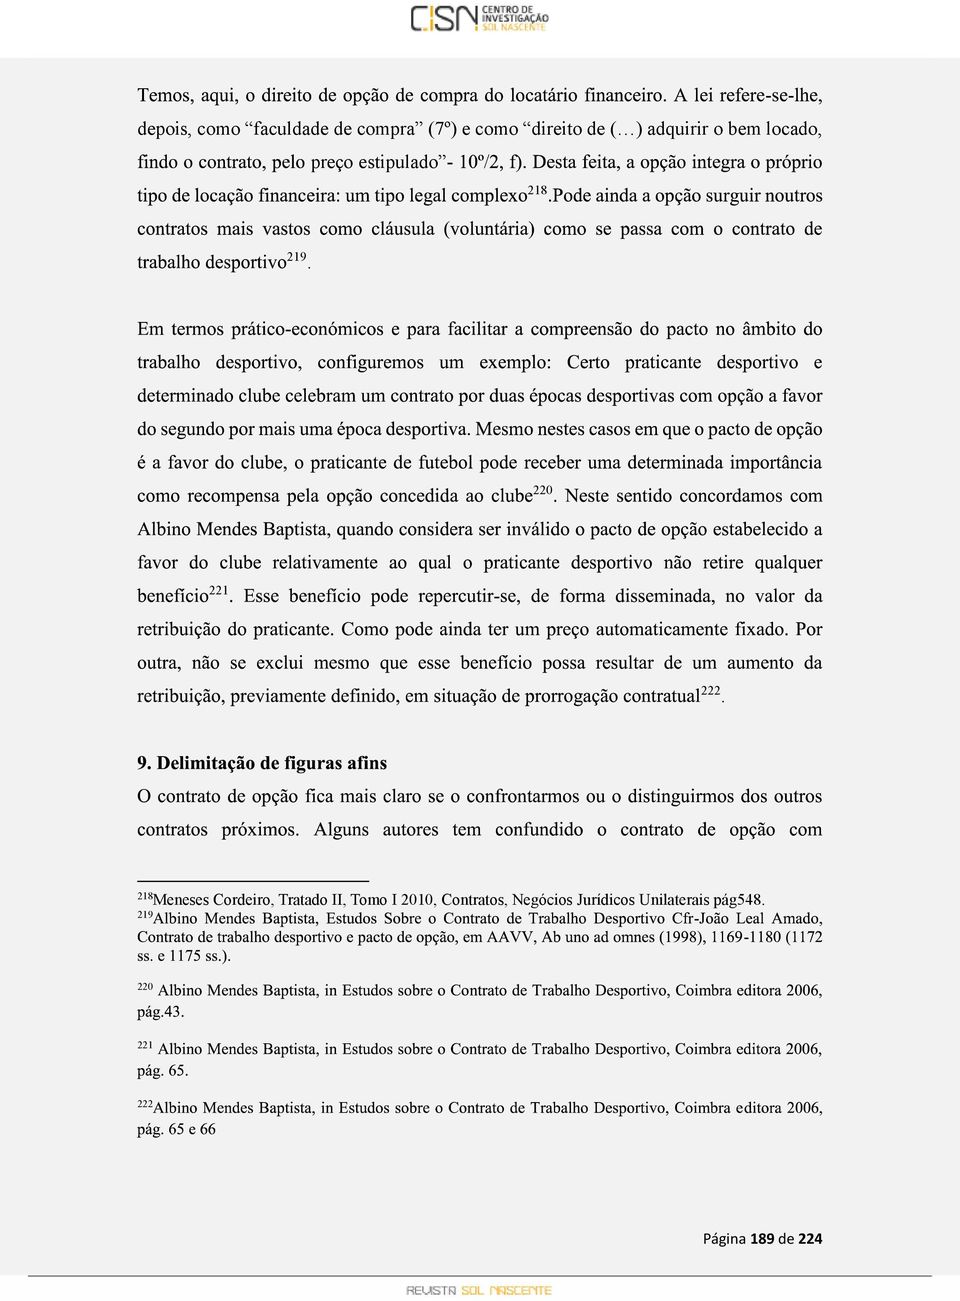 218 Meneses Cordeiro, Tratado II, Tomo I 2010, Contratos,